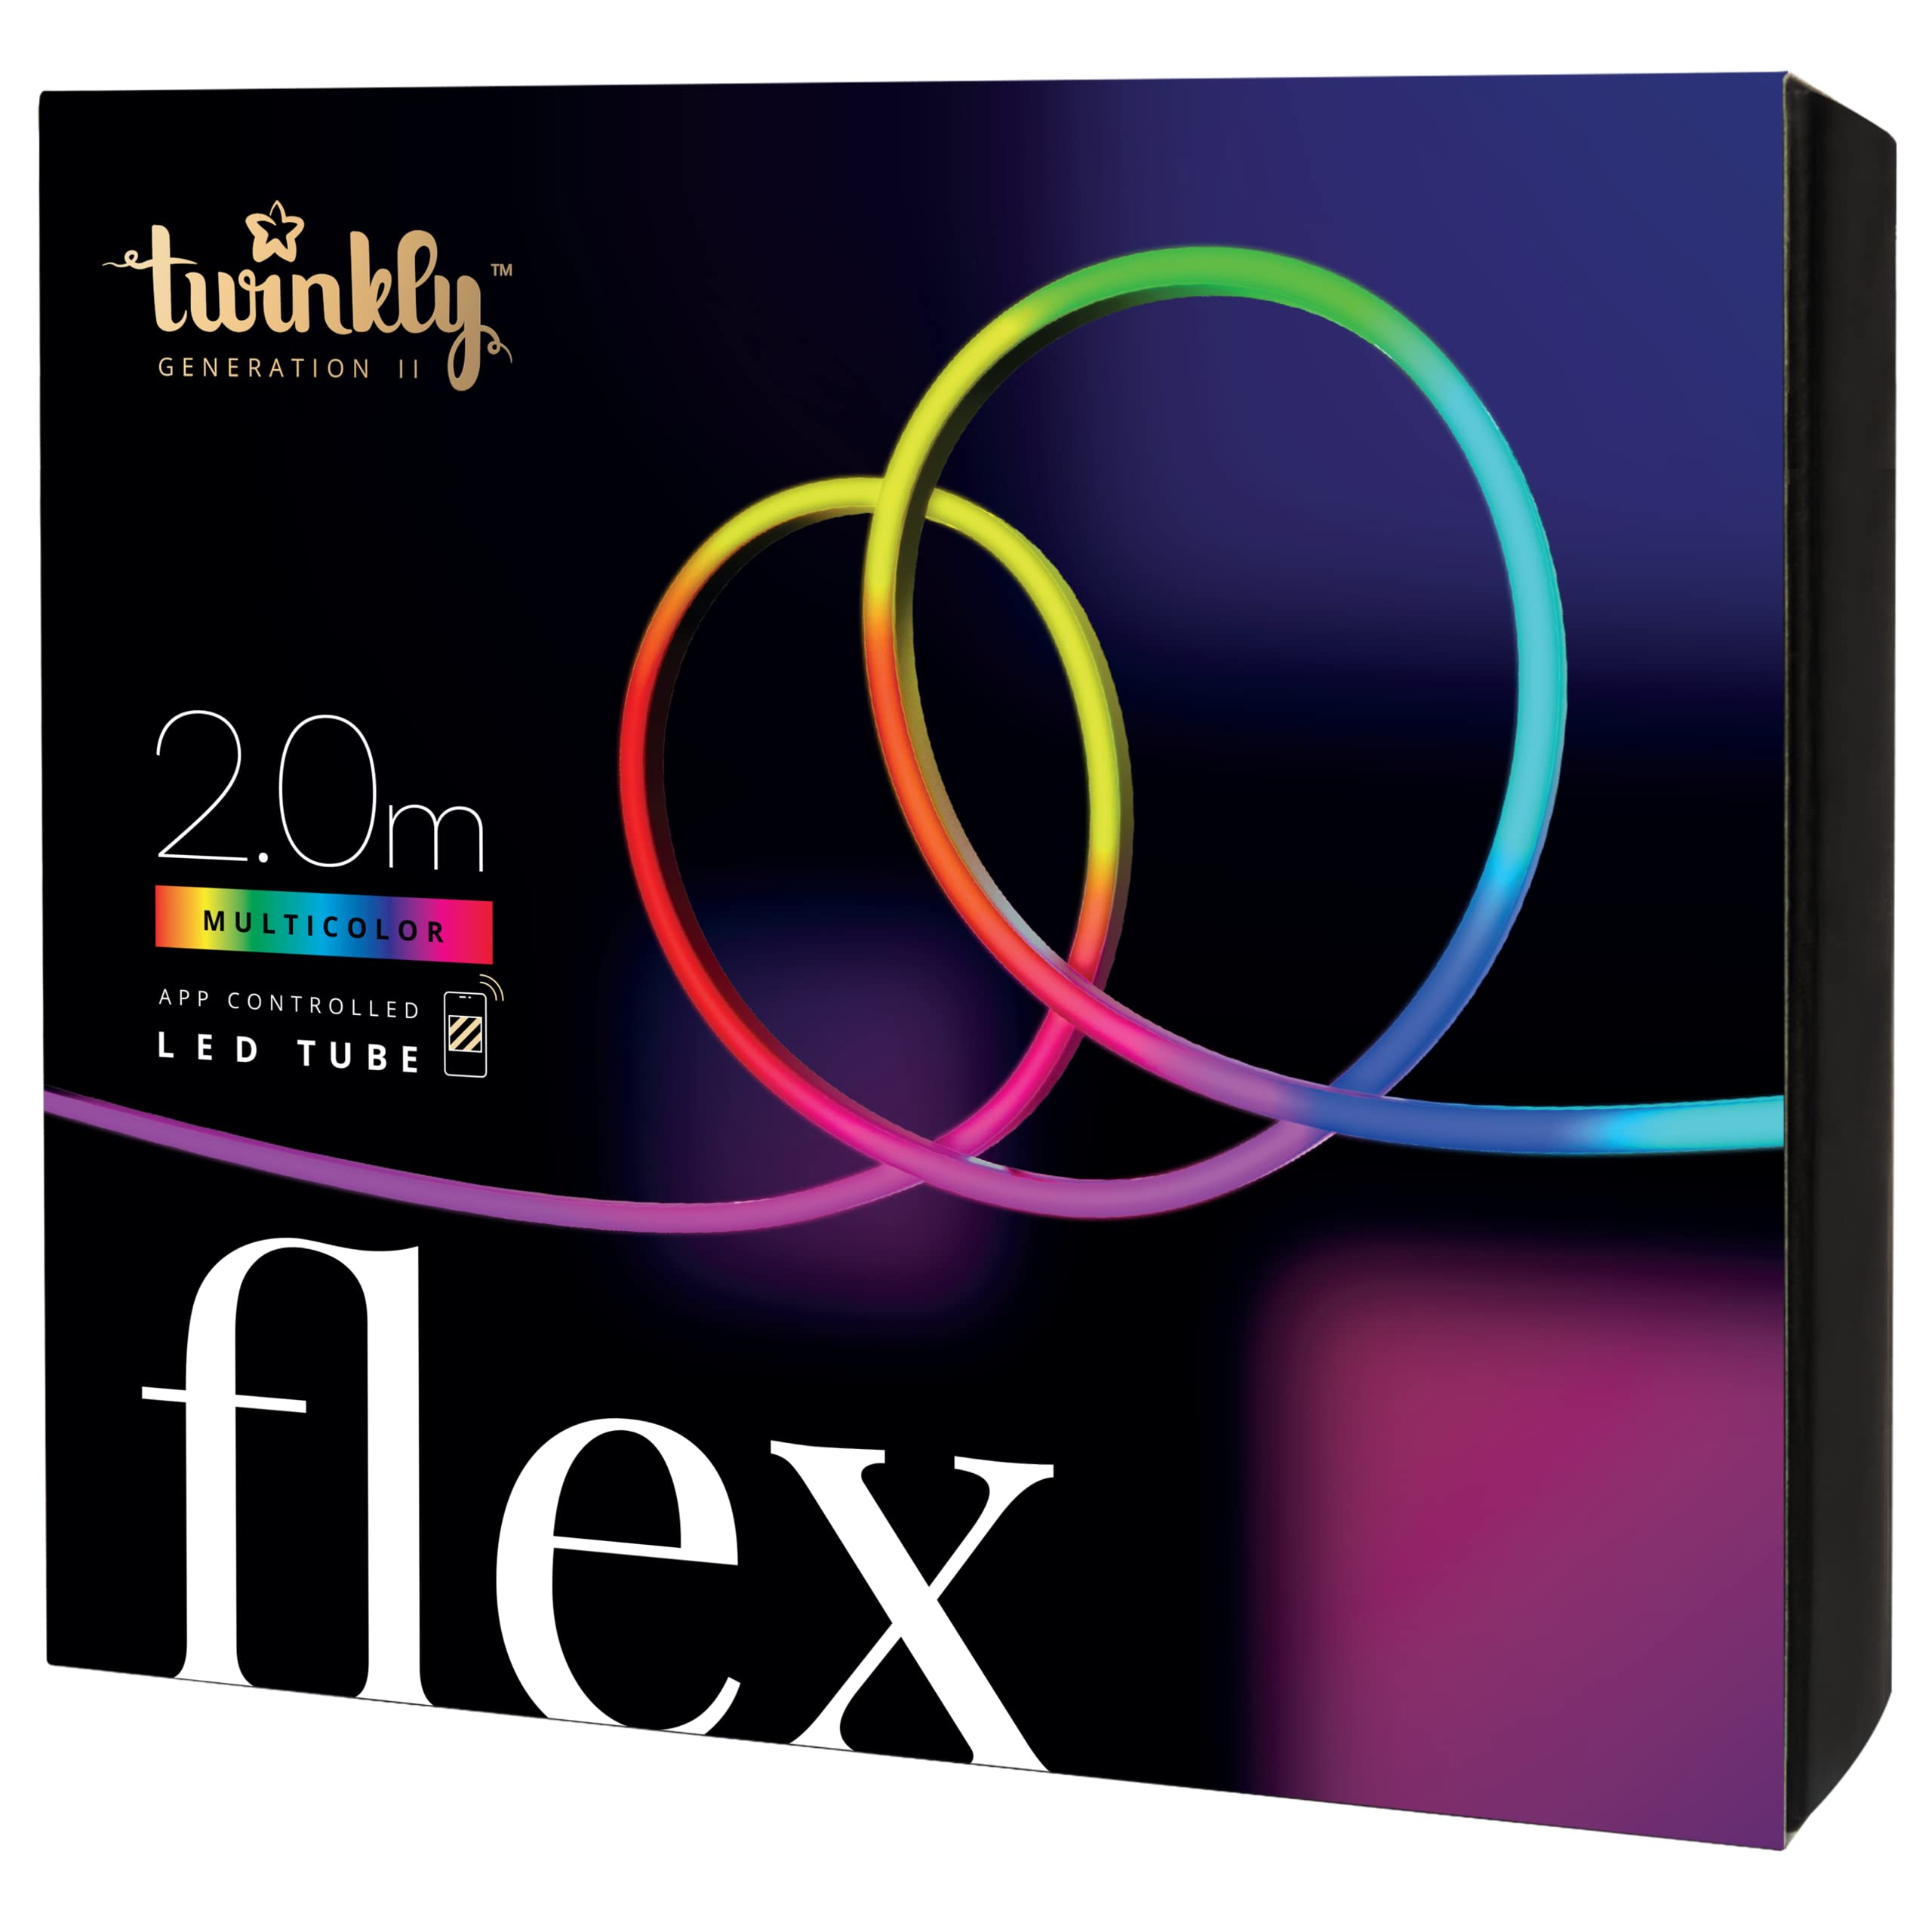 Twinkly Flex - Flexibler LED-Lichtschlauch mit RGB-LEDs - Dekorationsbeleuchtung für den Innenbereich - App-gesteuert, weißer Draht, 2m